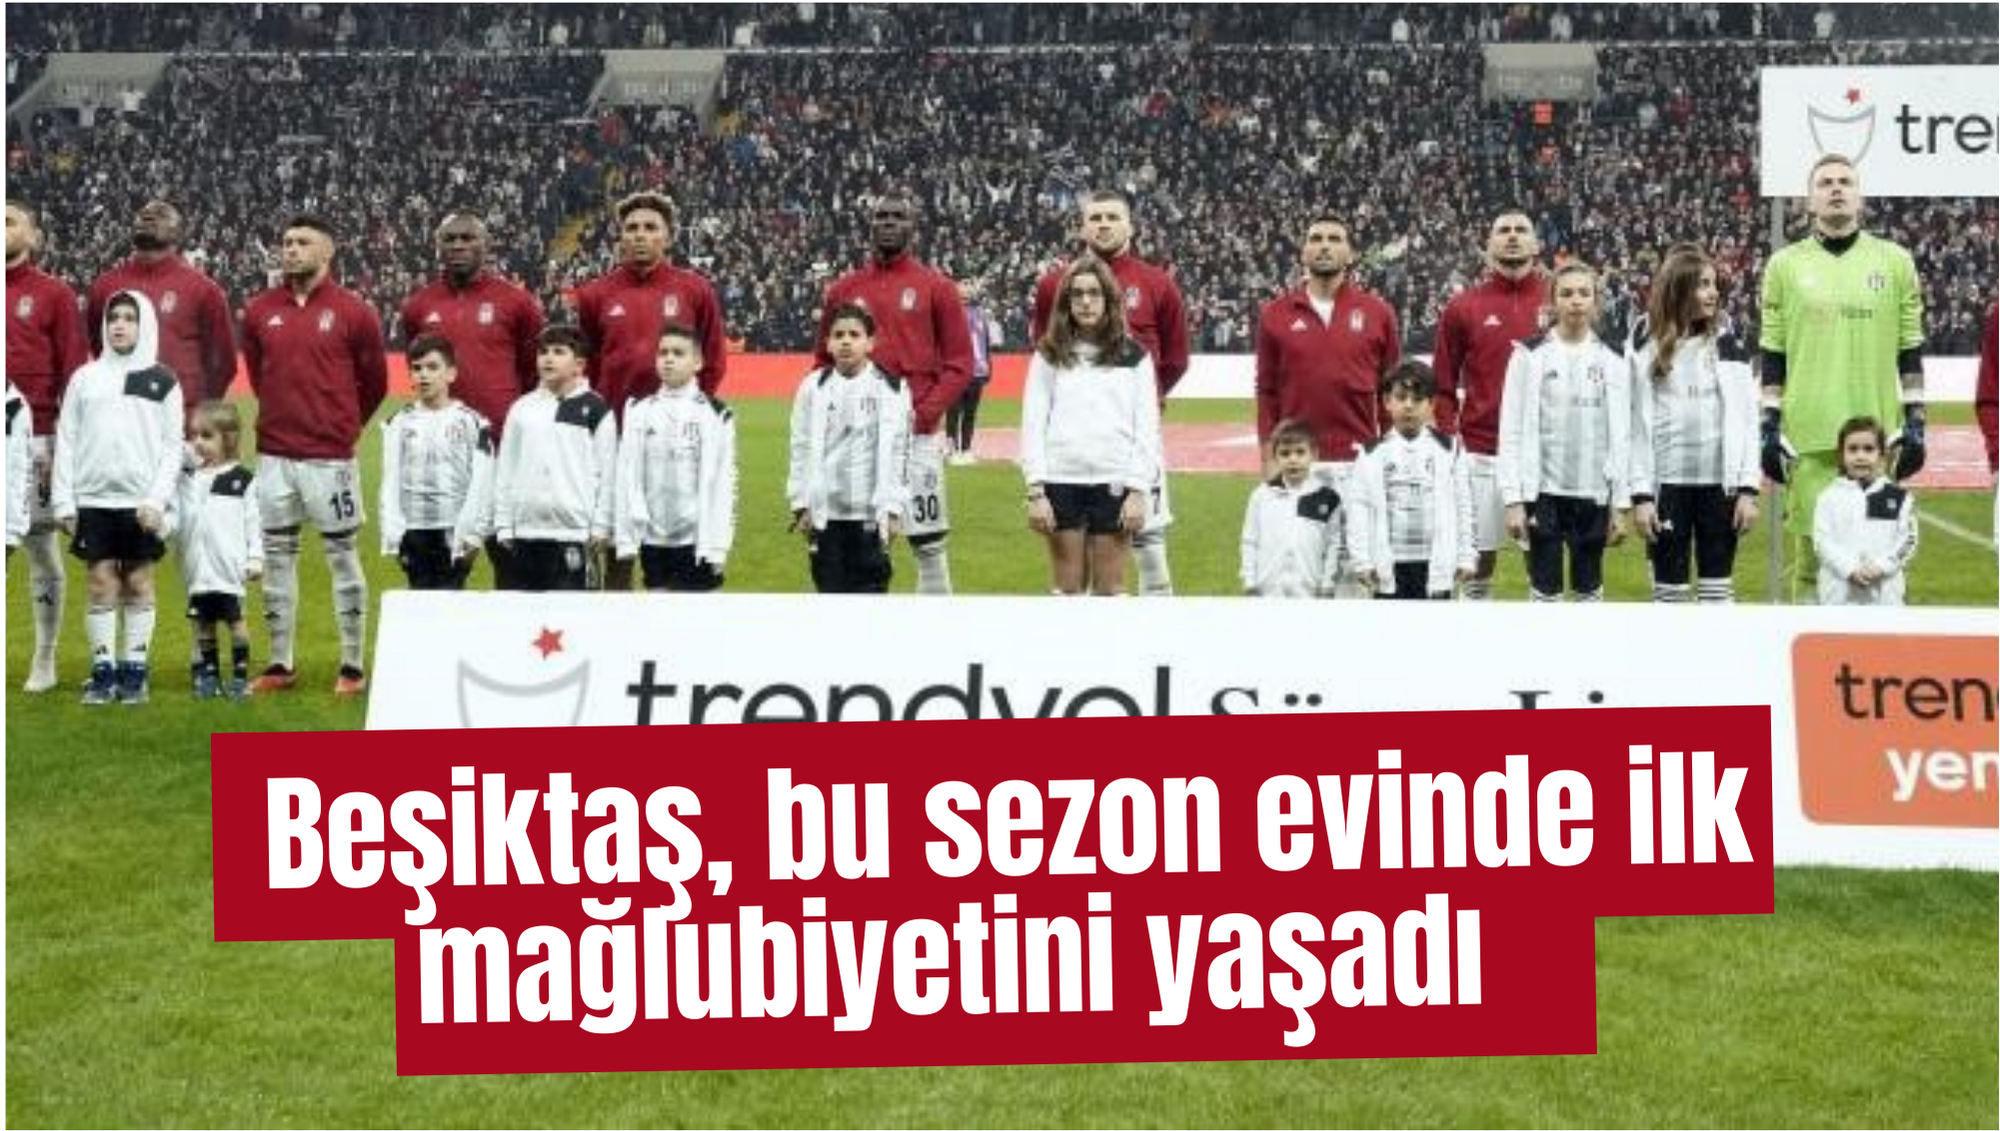 Beşiktaş, bu sezon evinde ilk mağlubiyetini yaşadı